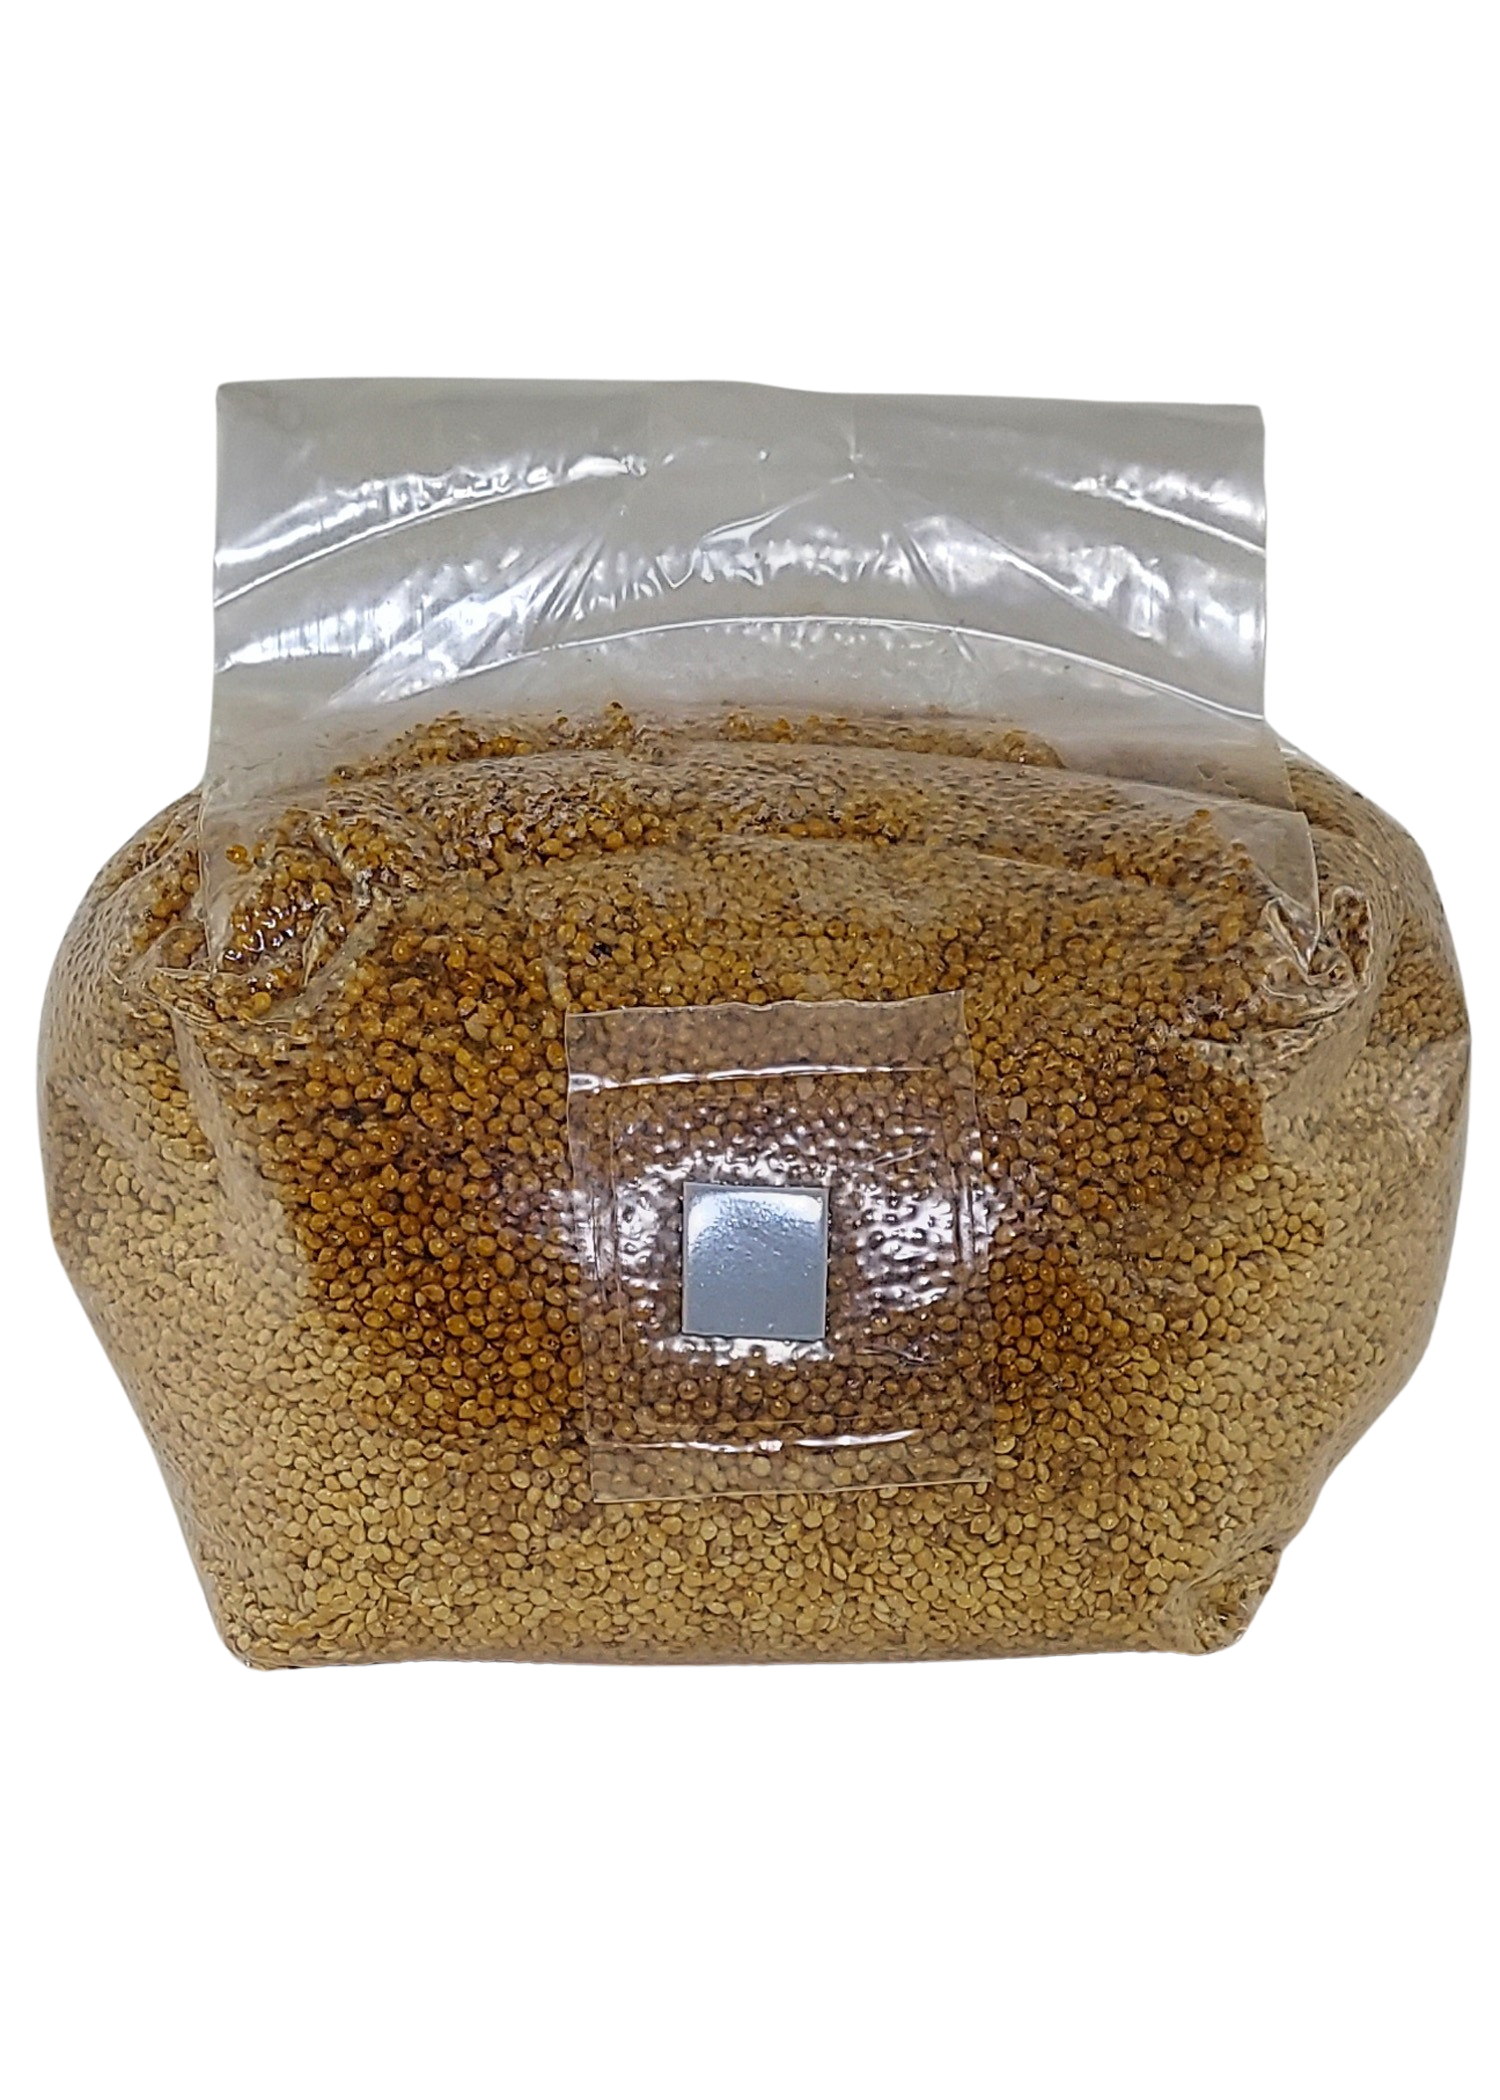 gro magik sterilized grain bag for mushrooms